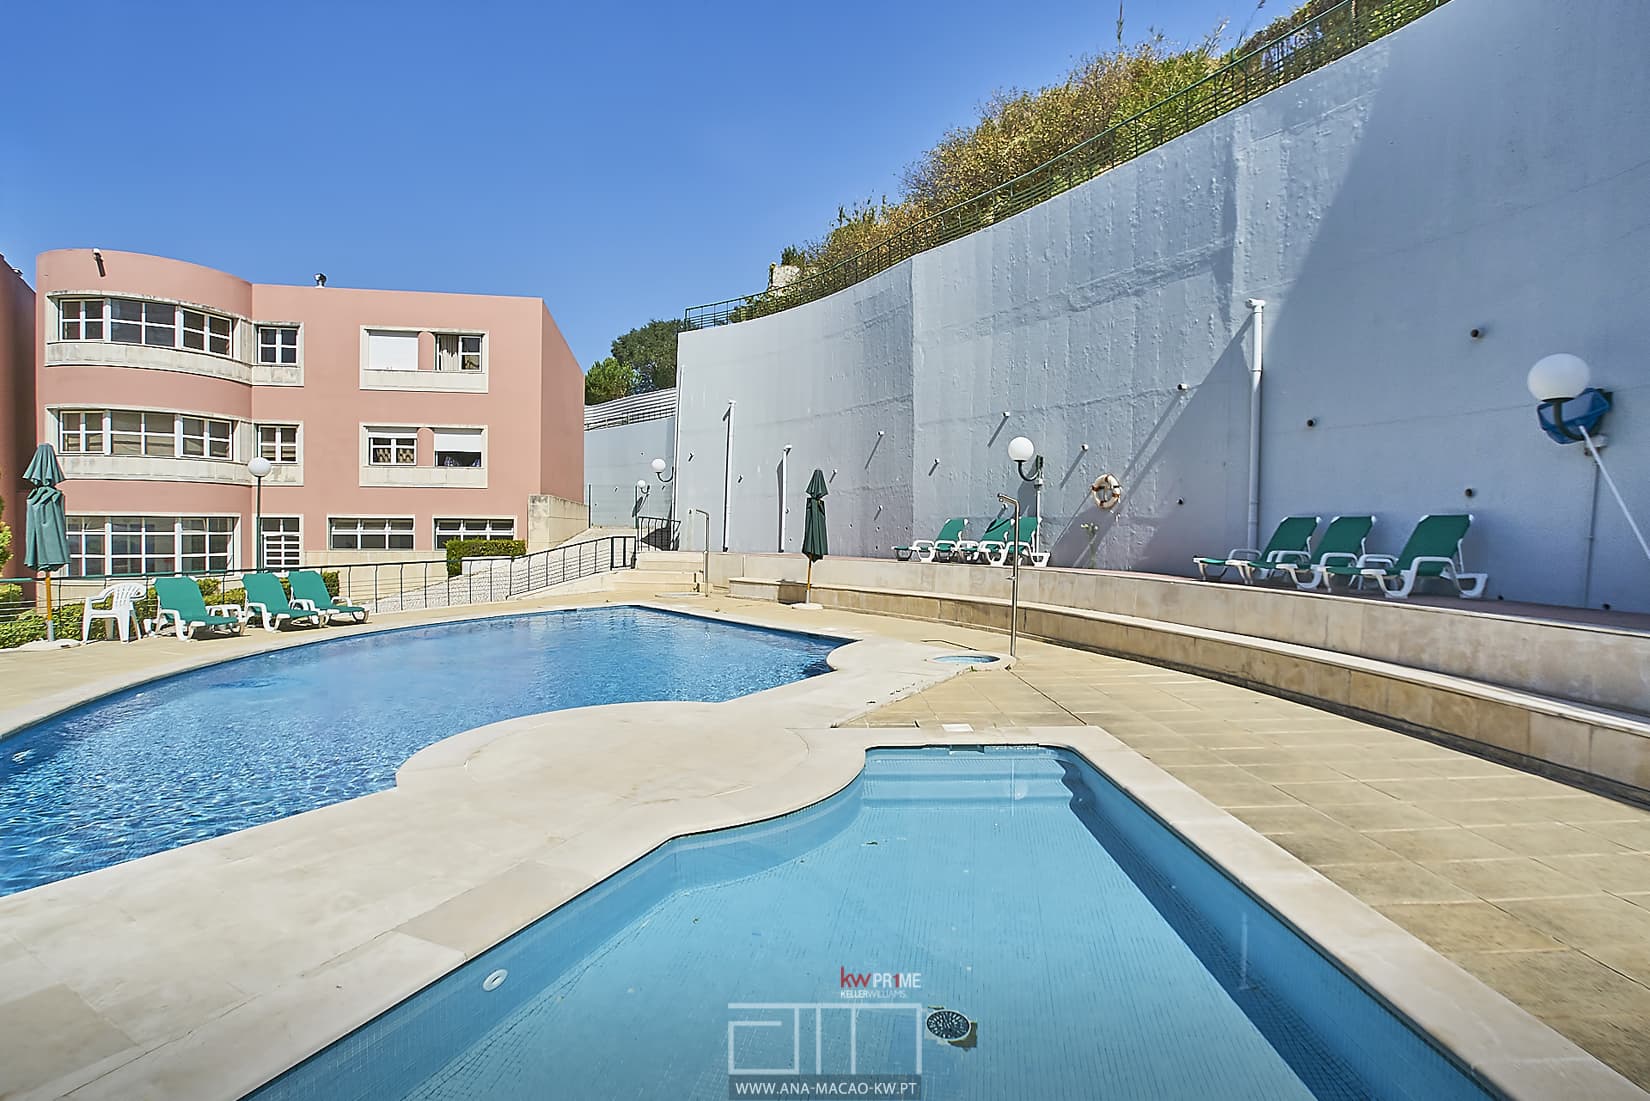 Swimming pool of condominium